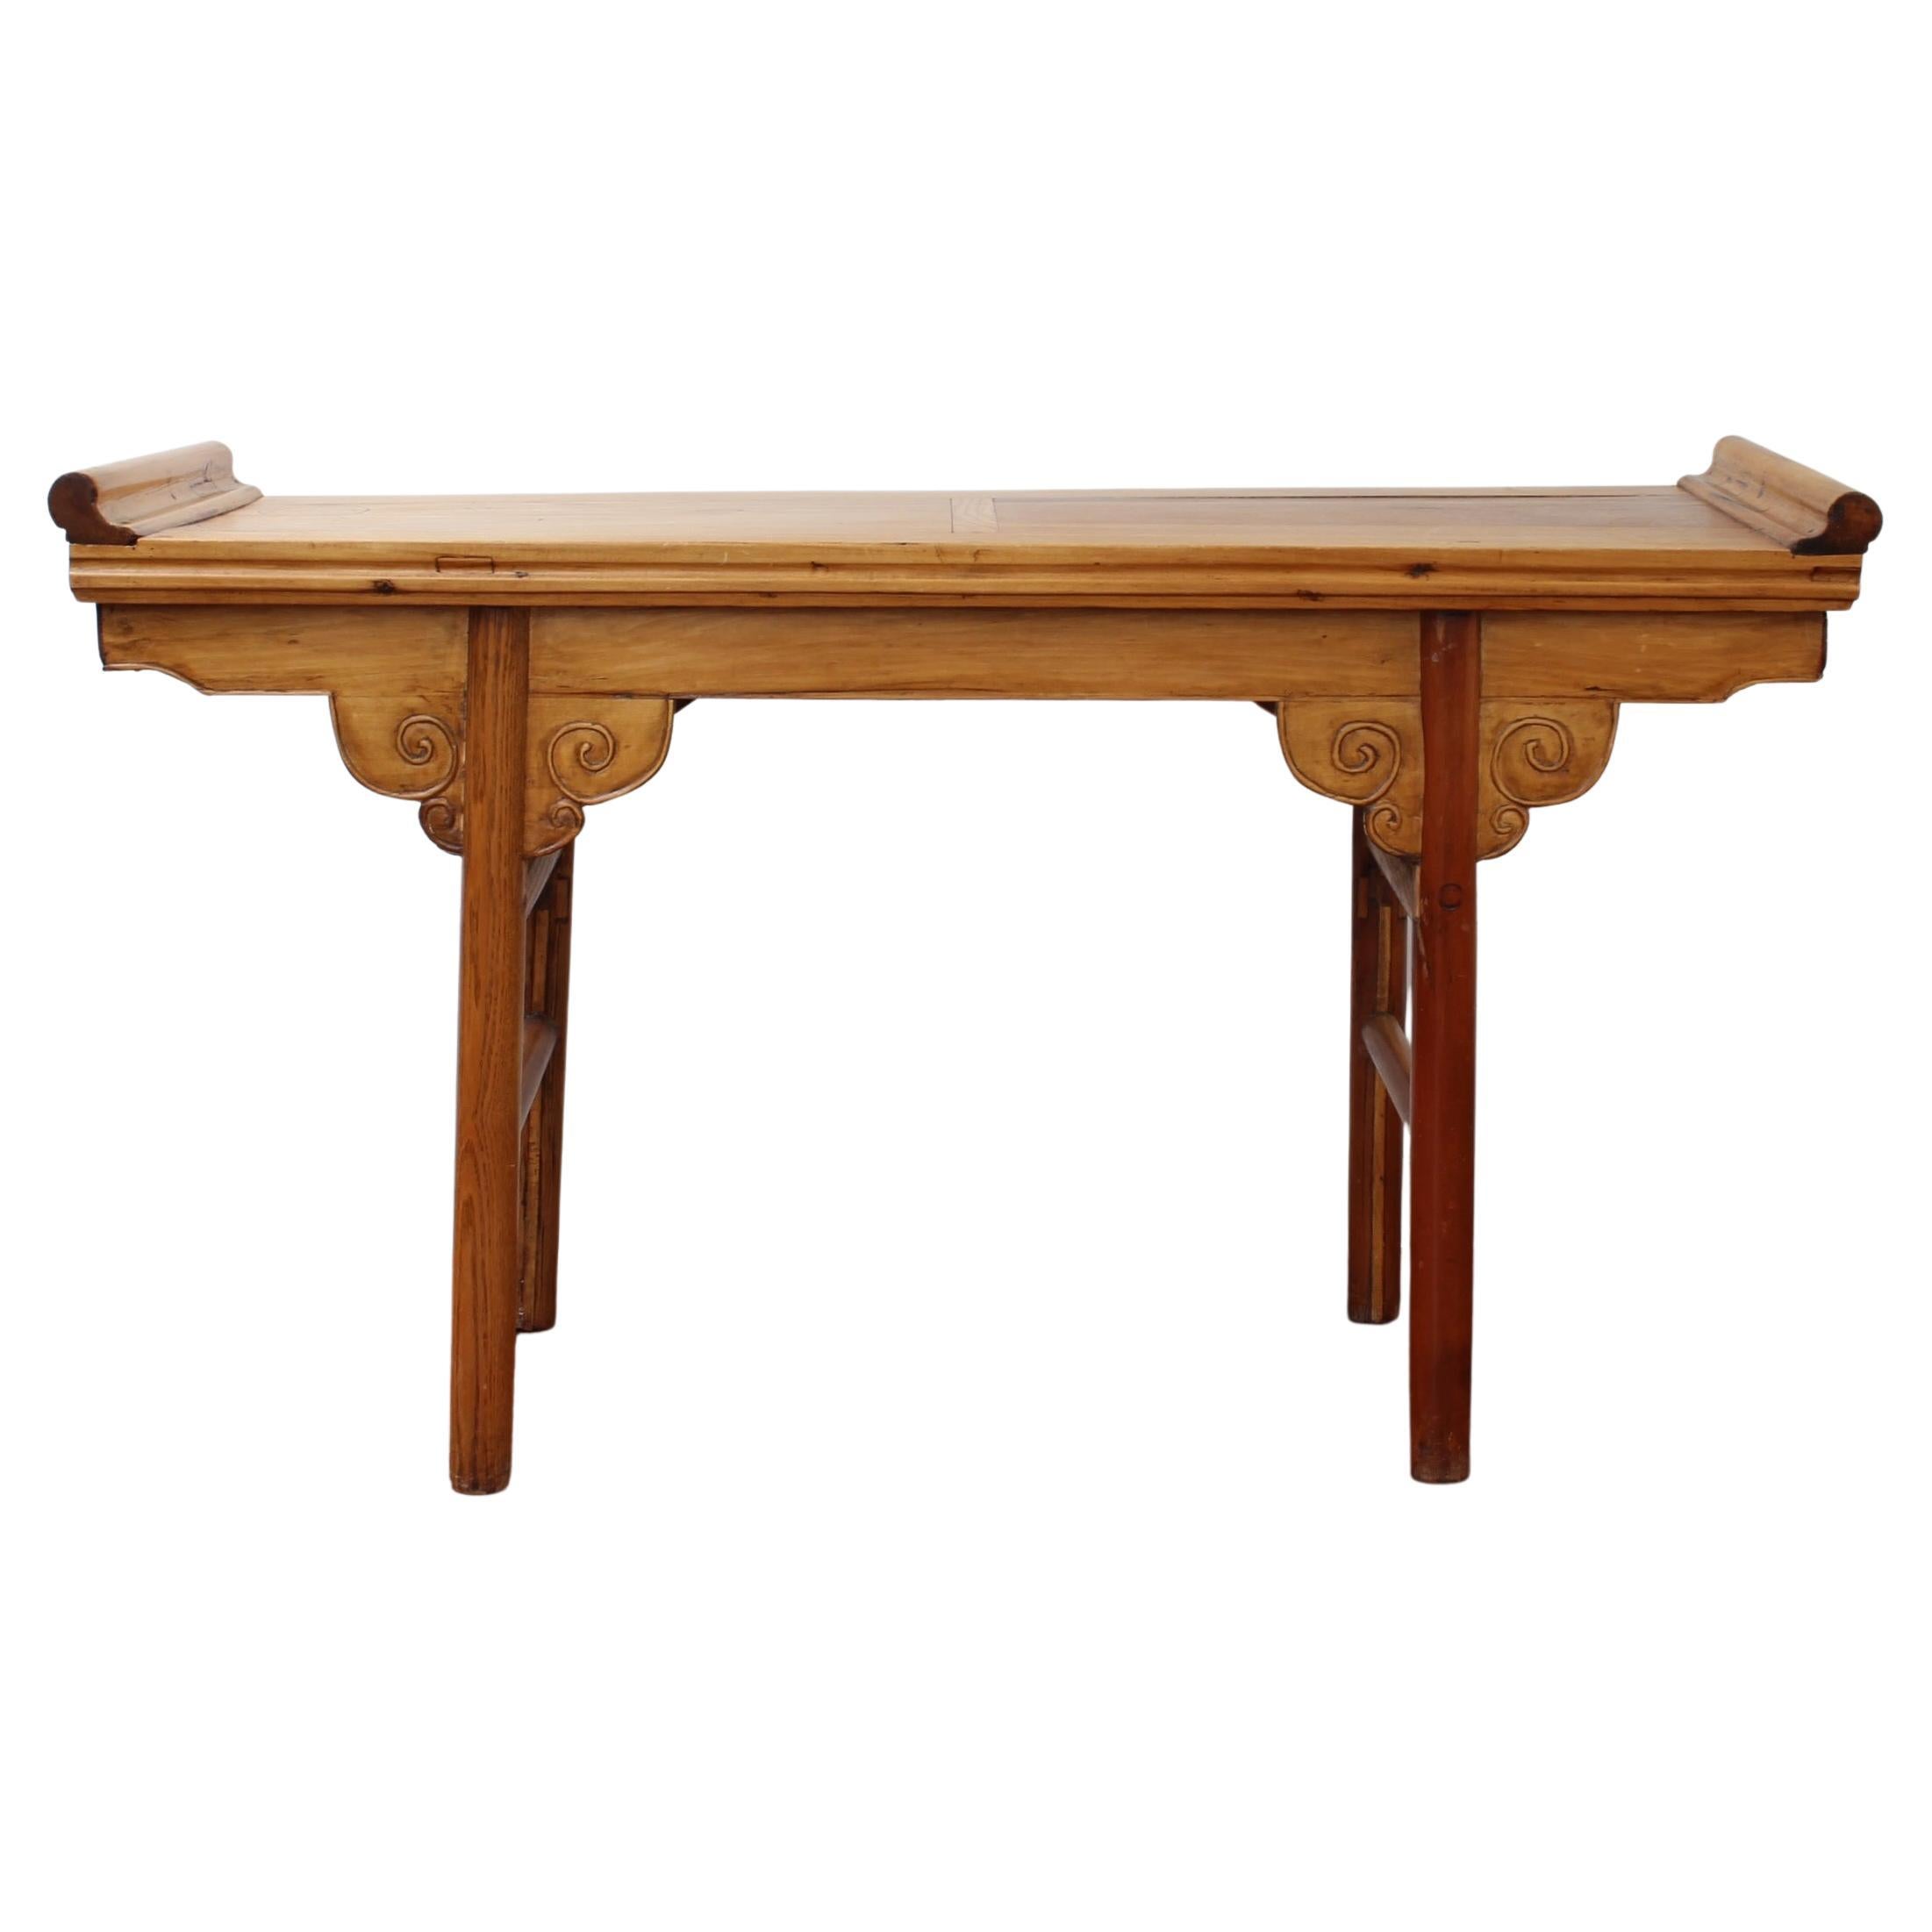 Table console en bois de style chinois français '20ème siècle'.